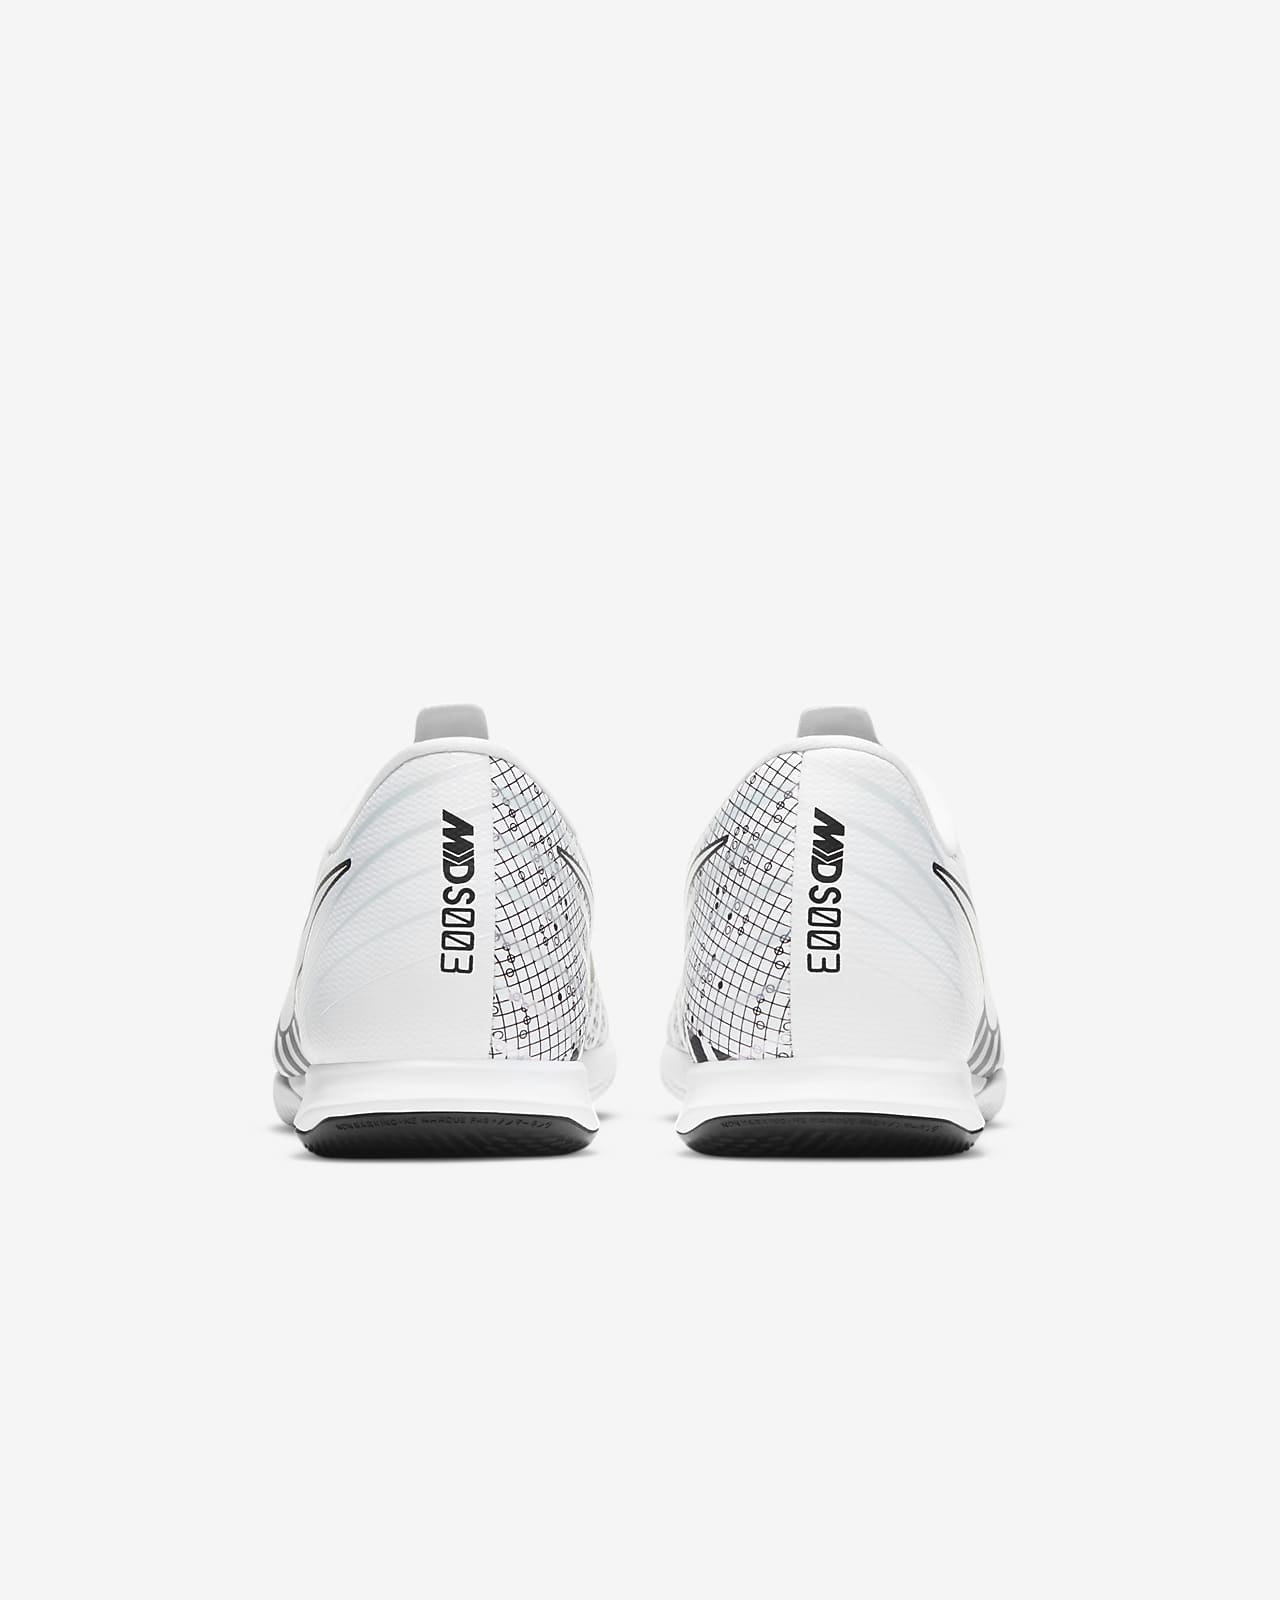 nike mercurial vapor indoor soccer shoes